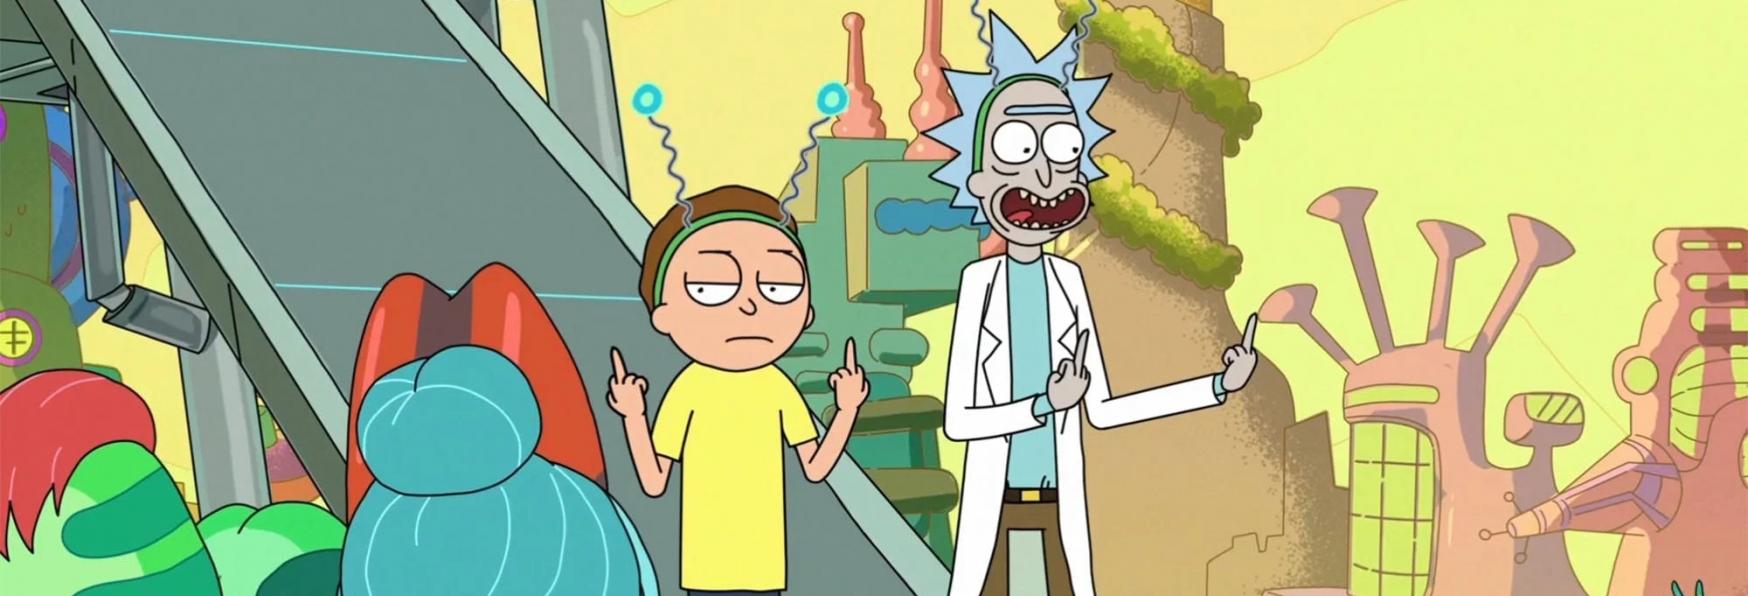 Rick and Morty 7: Presto sarà rilasciato il Primo Sguardo alla nuova Stagione